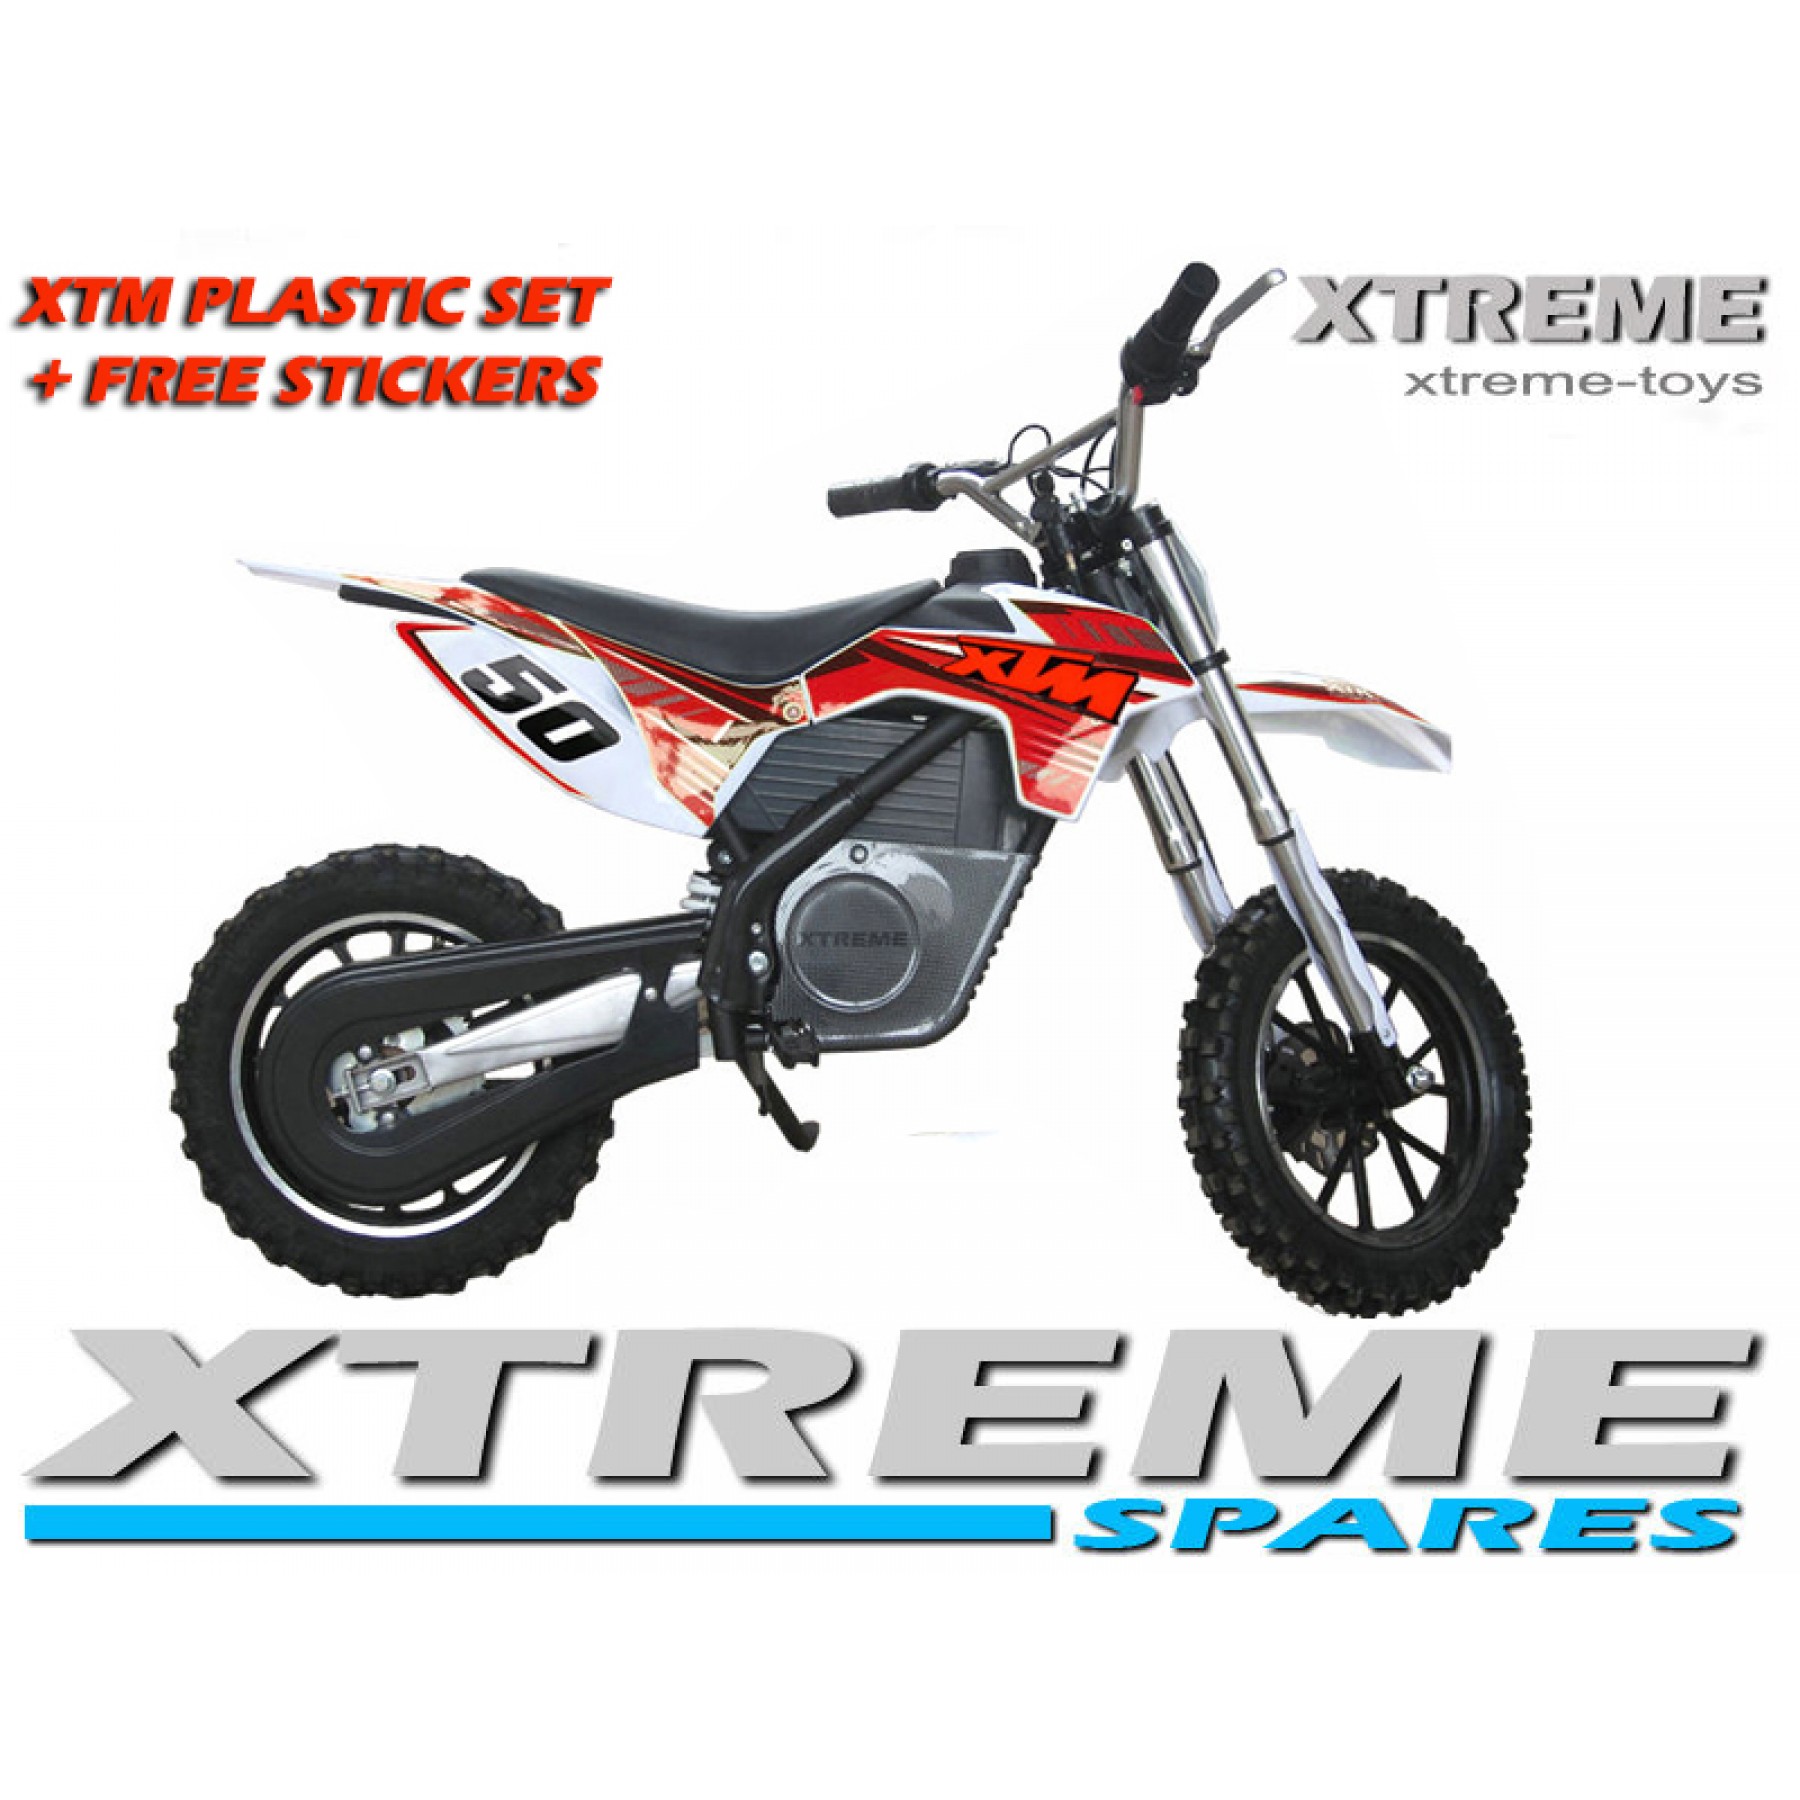 MINI DIRT MOTOR BIKE XTREME XTM FULL PLASTICS KIT + FREE RED STICKERS KIT SET